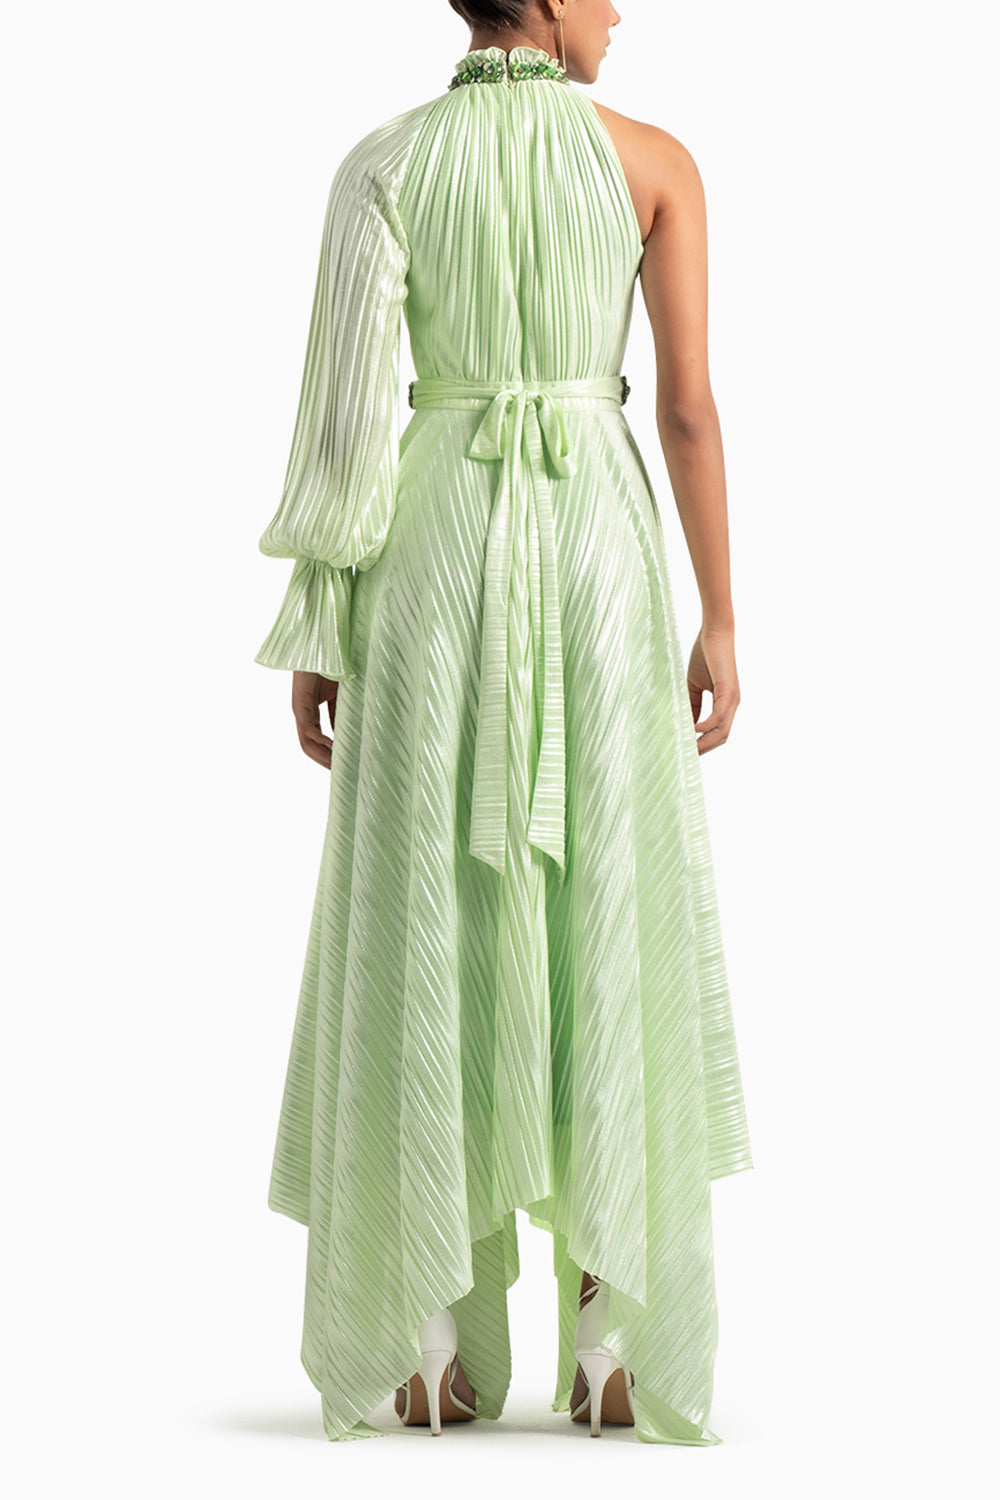 Mint Green Shimmer Dress